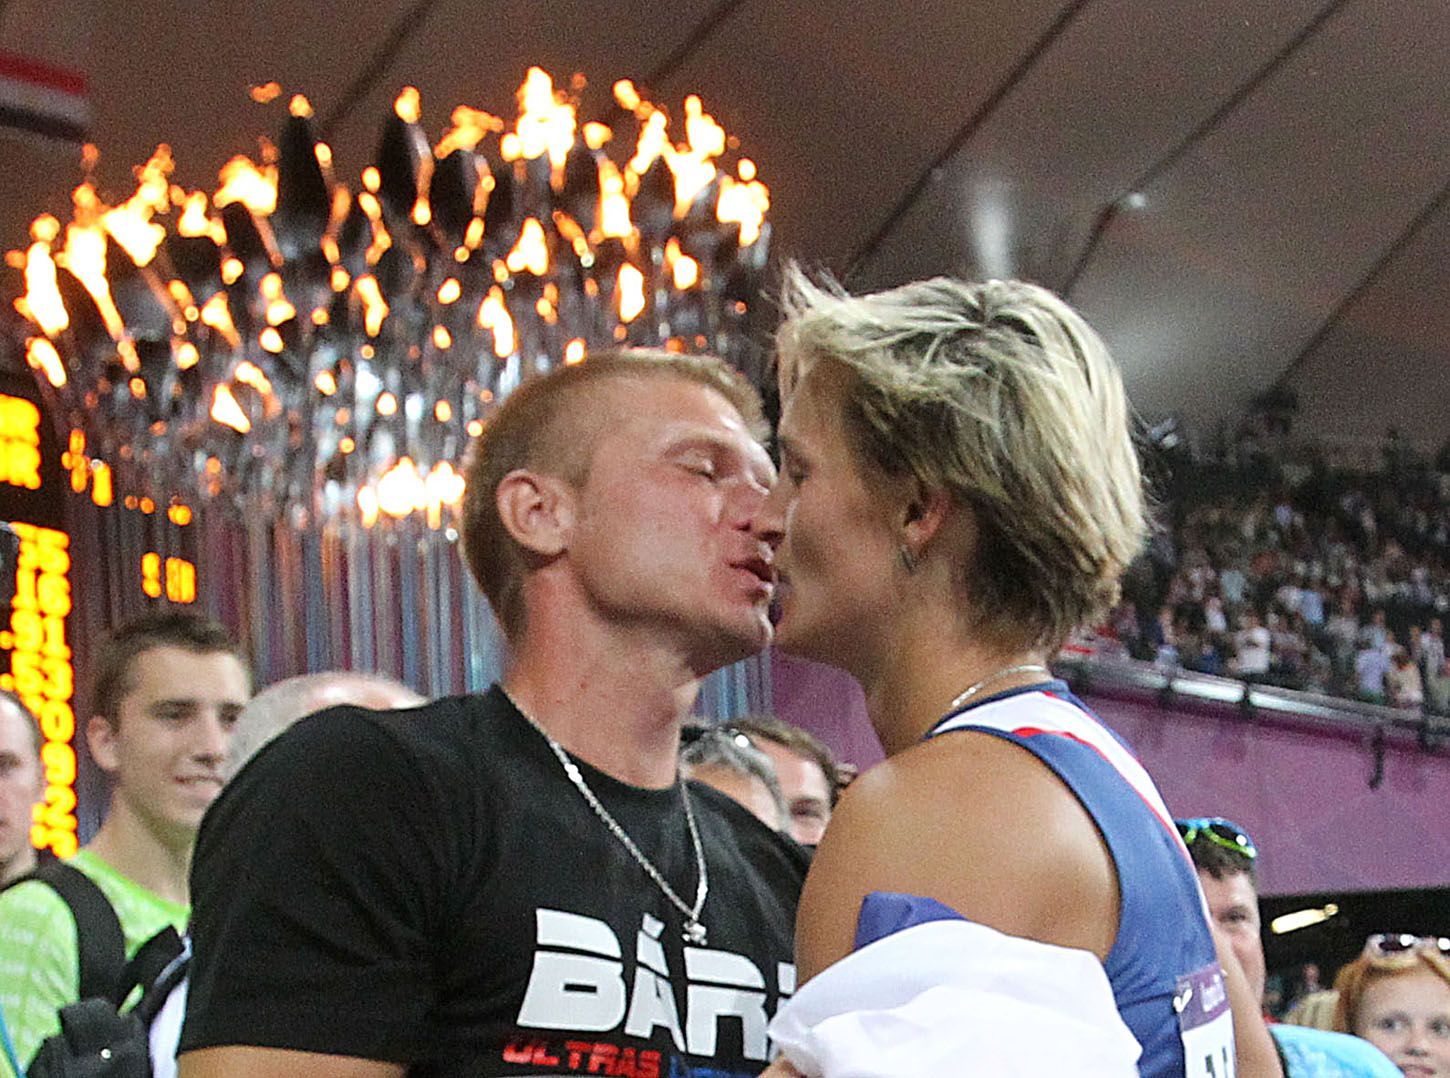 Barbora Špotáková s přítelem Lukášem oslavuje vítězství ve finále oštěpu na OH 2012